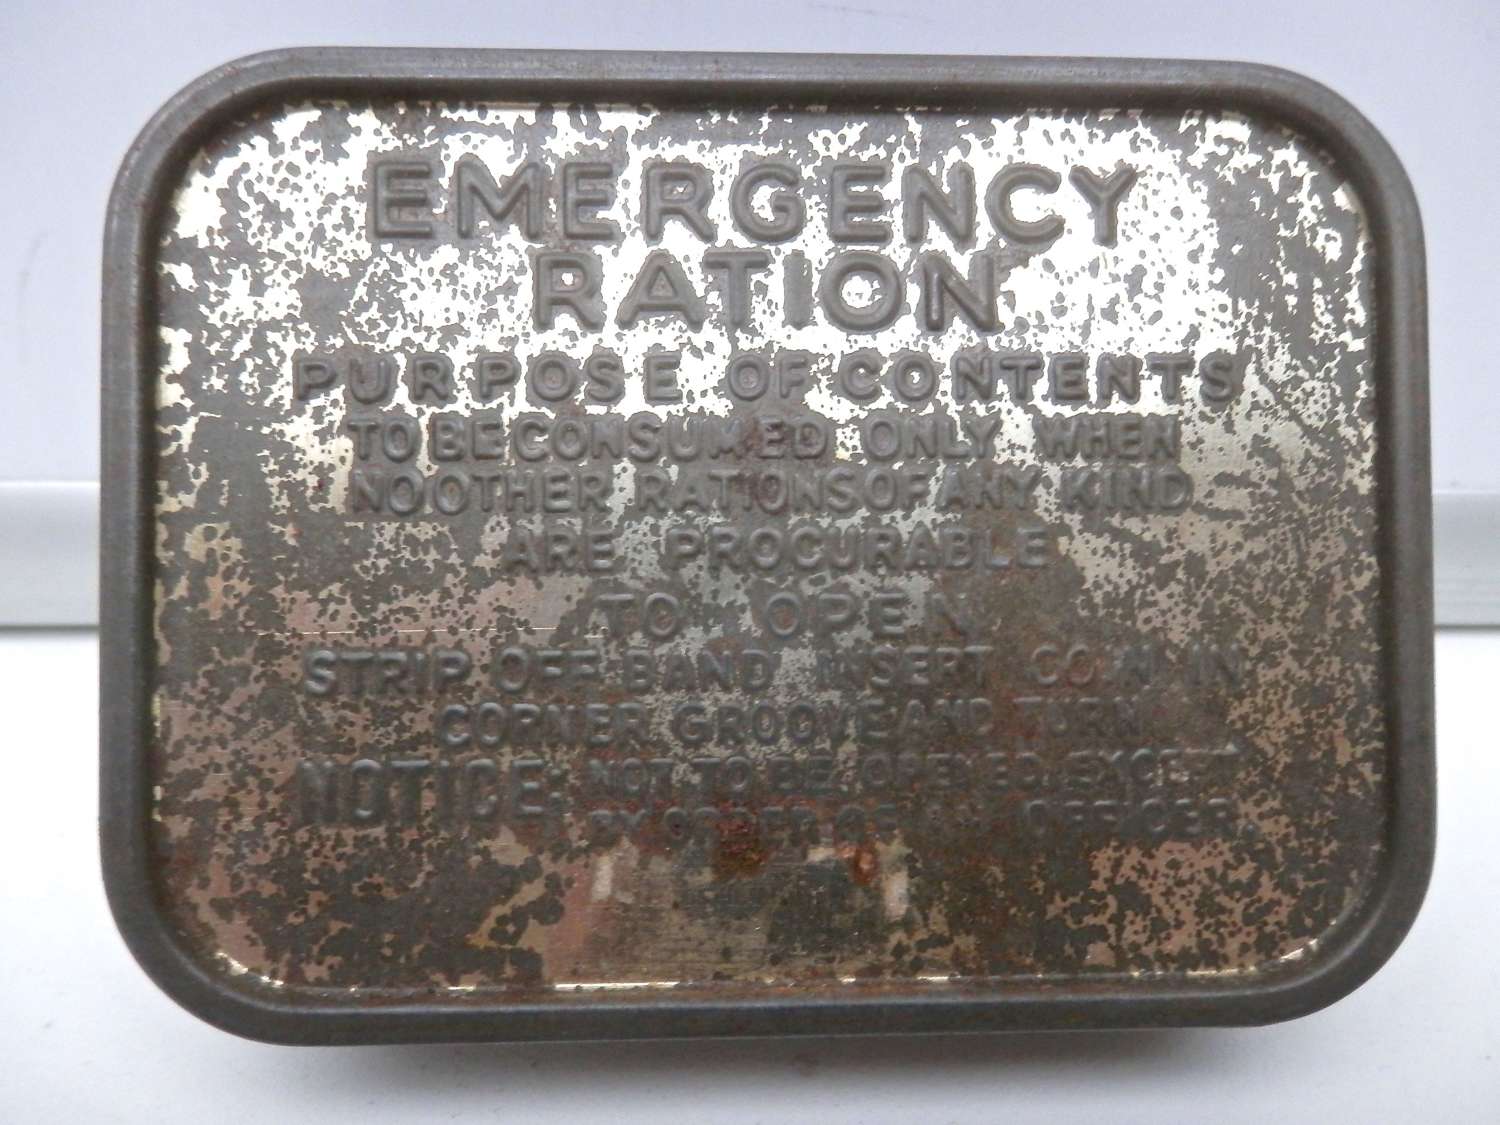 WW2 emergency ration tin